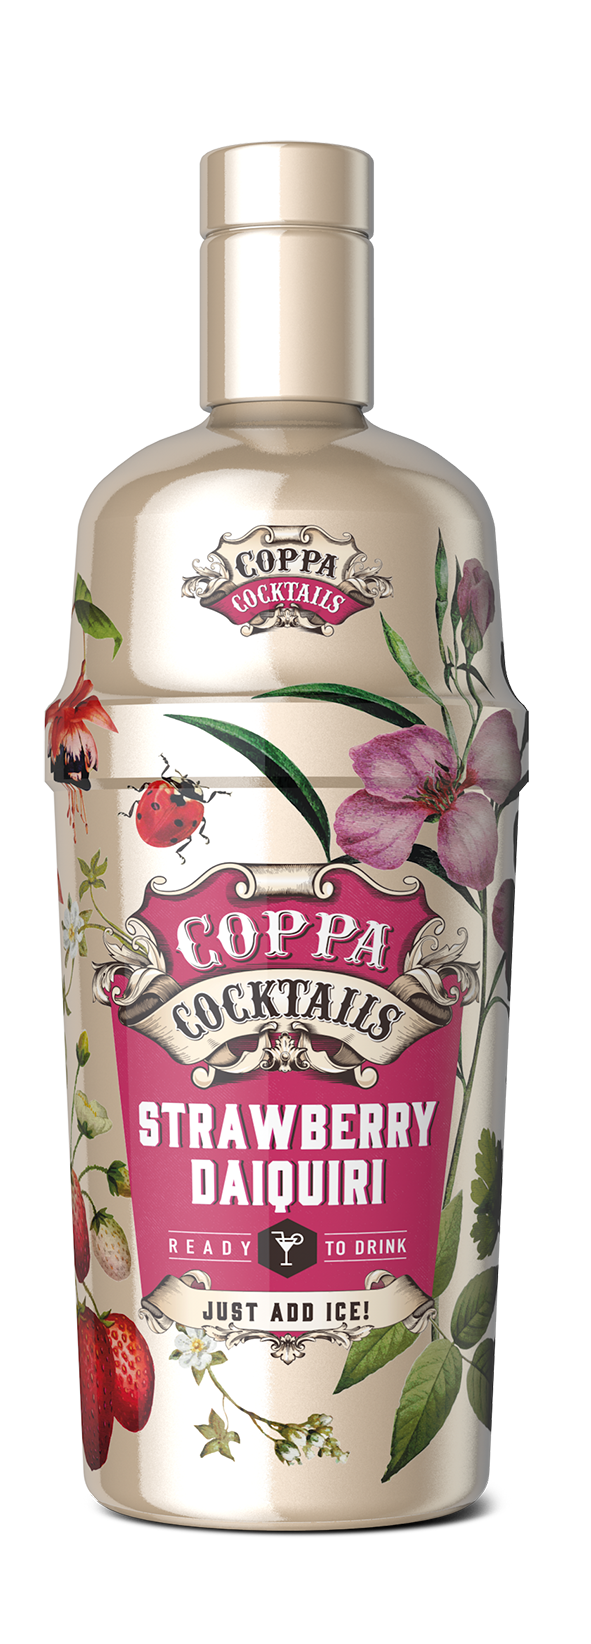 Coppa Cocktails Strawberry Daiquiri 10% Vol. 0,7 l